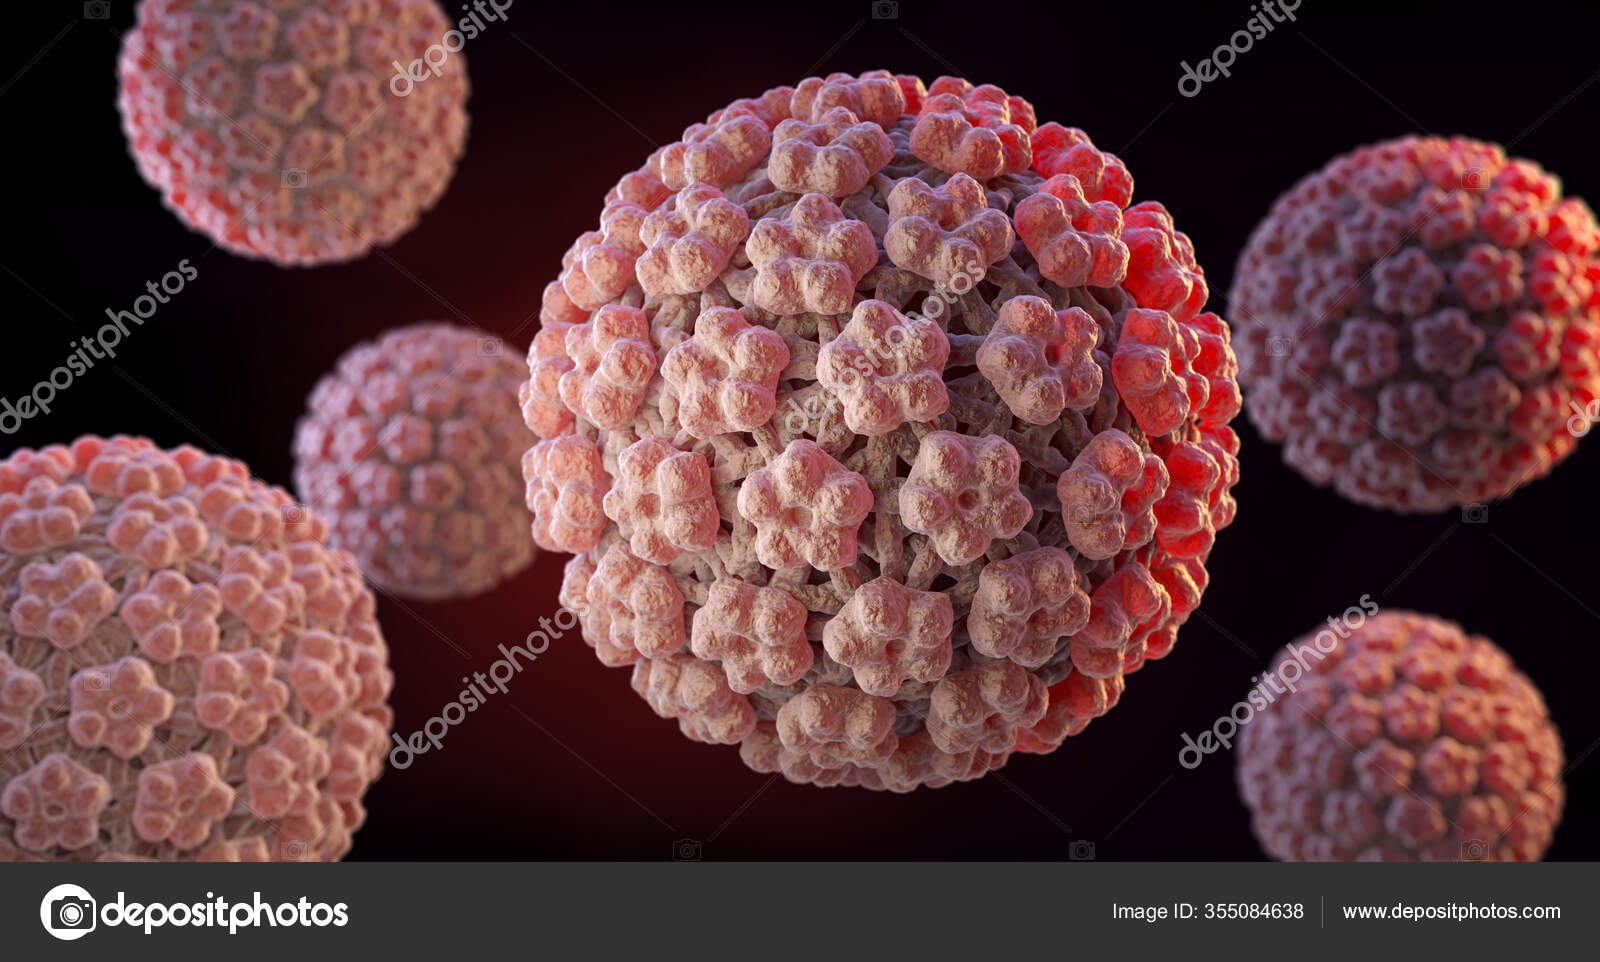 Human papillomavirus family